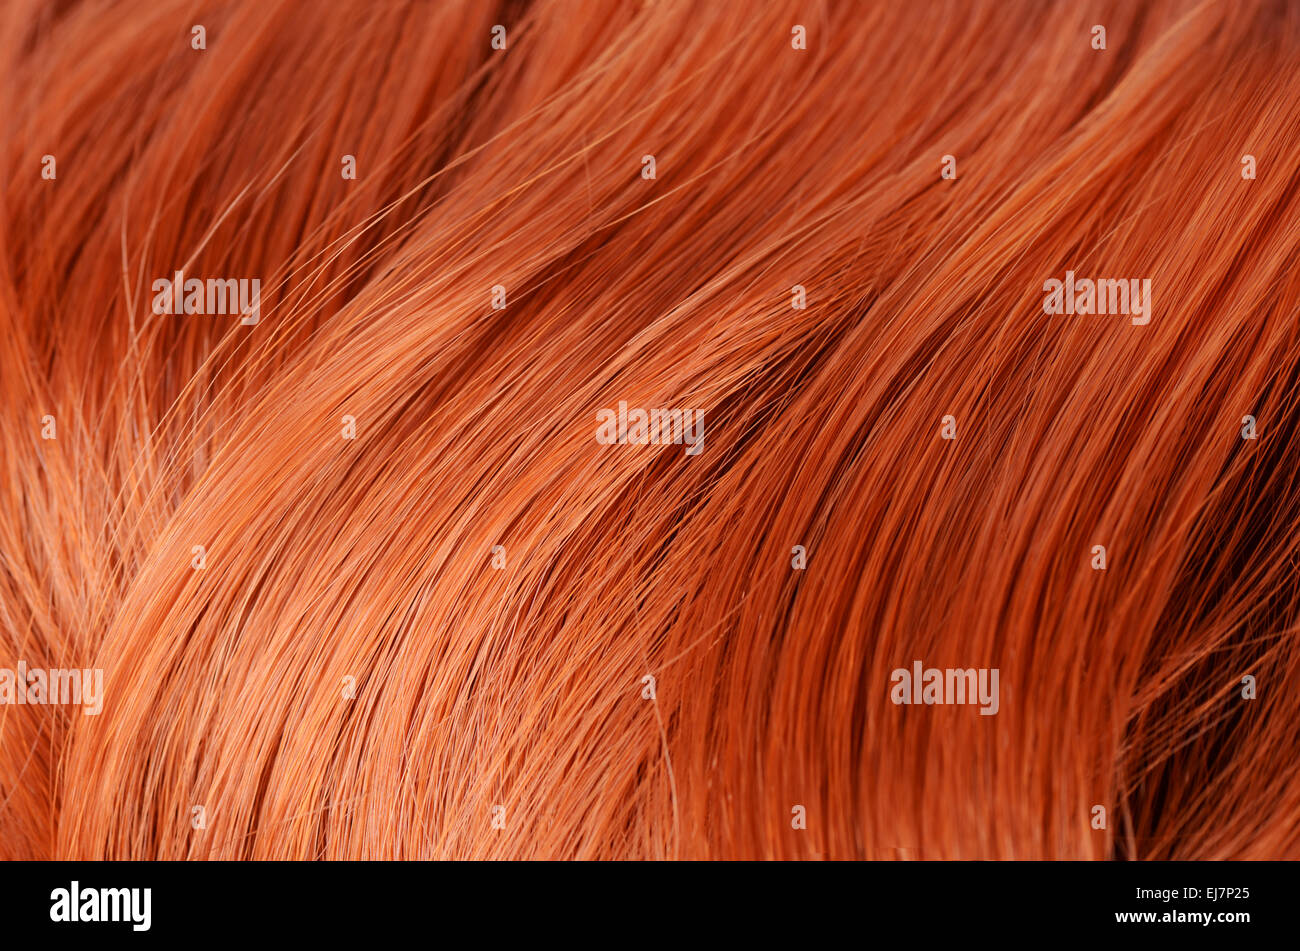 De beaux cheveux roux en arrière-plan Banque D'Images